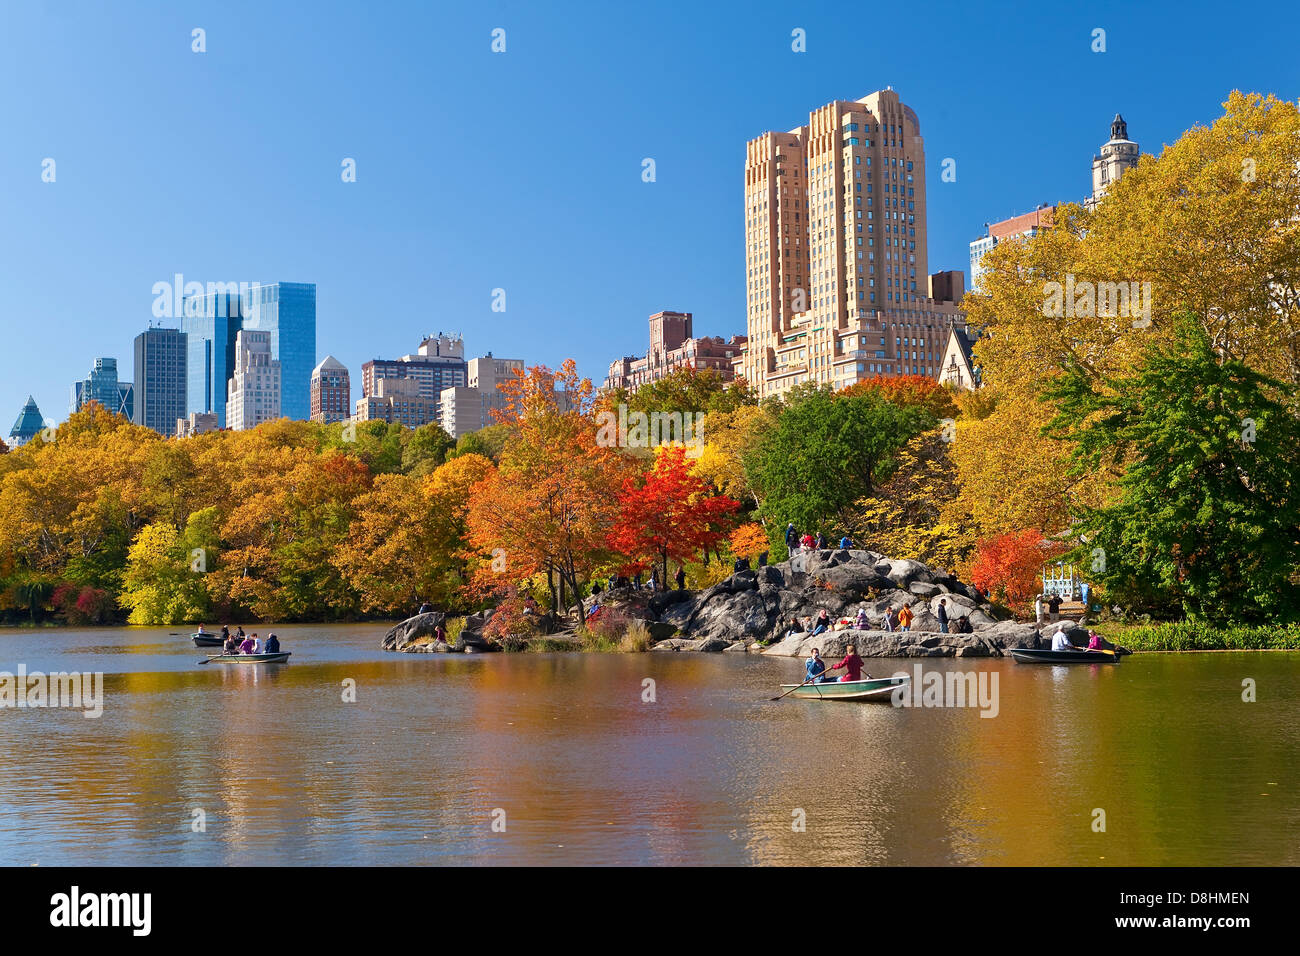 Estados Unidos, Manhattan, Ciudad de Nueva York, Central Park y los grandes edificios a lo largo de Central Park West vistos a través del lago en otoño Foto de stock